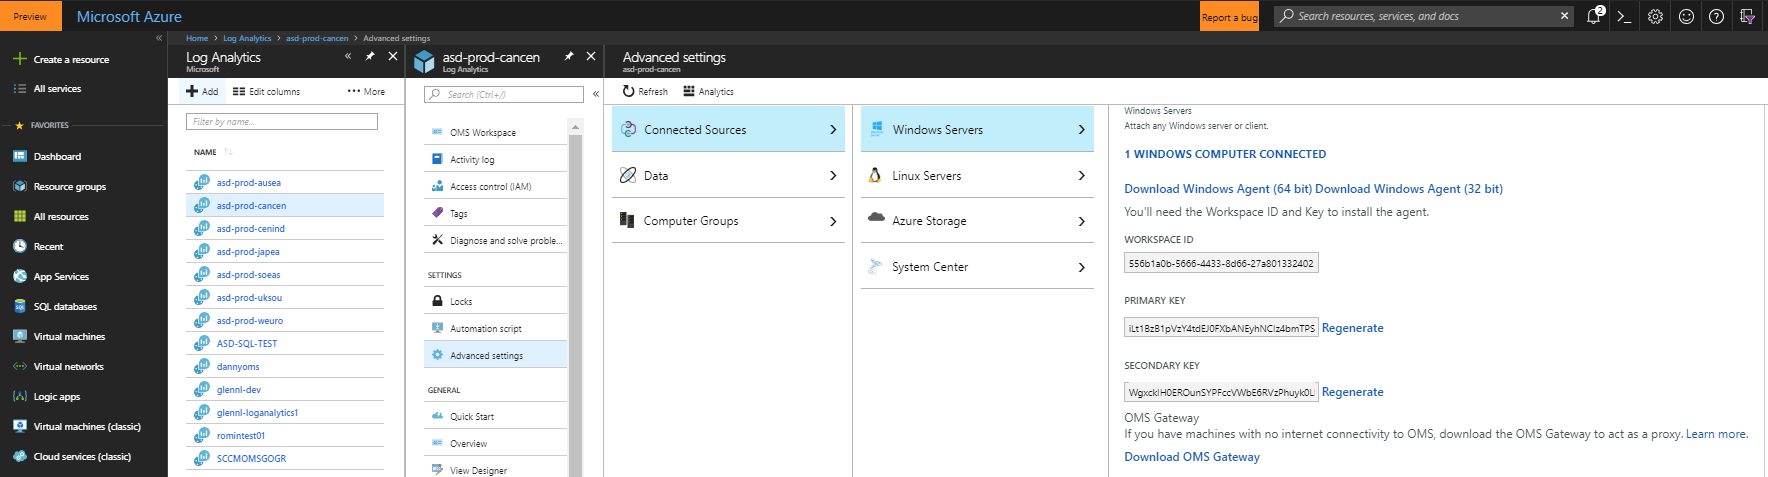 Fenêtre Microsoft Azure, qui montre les éléments de menu Sources connectées et Serveurs Windows sélectionnés.